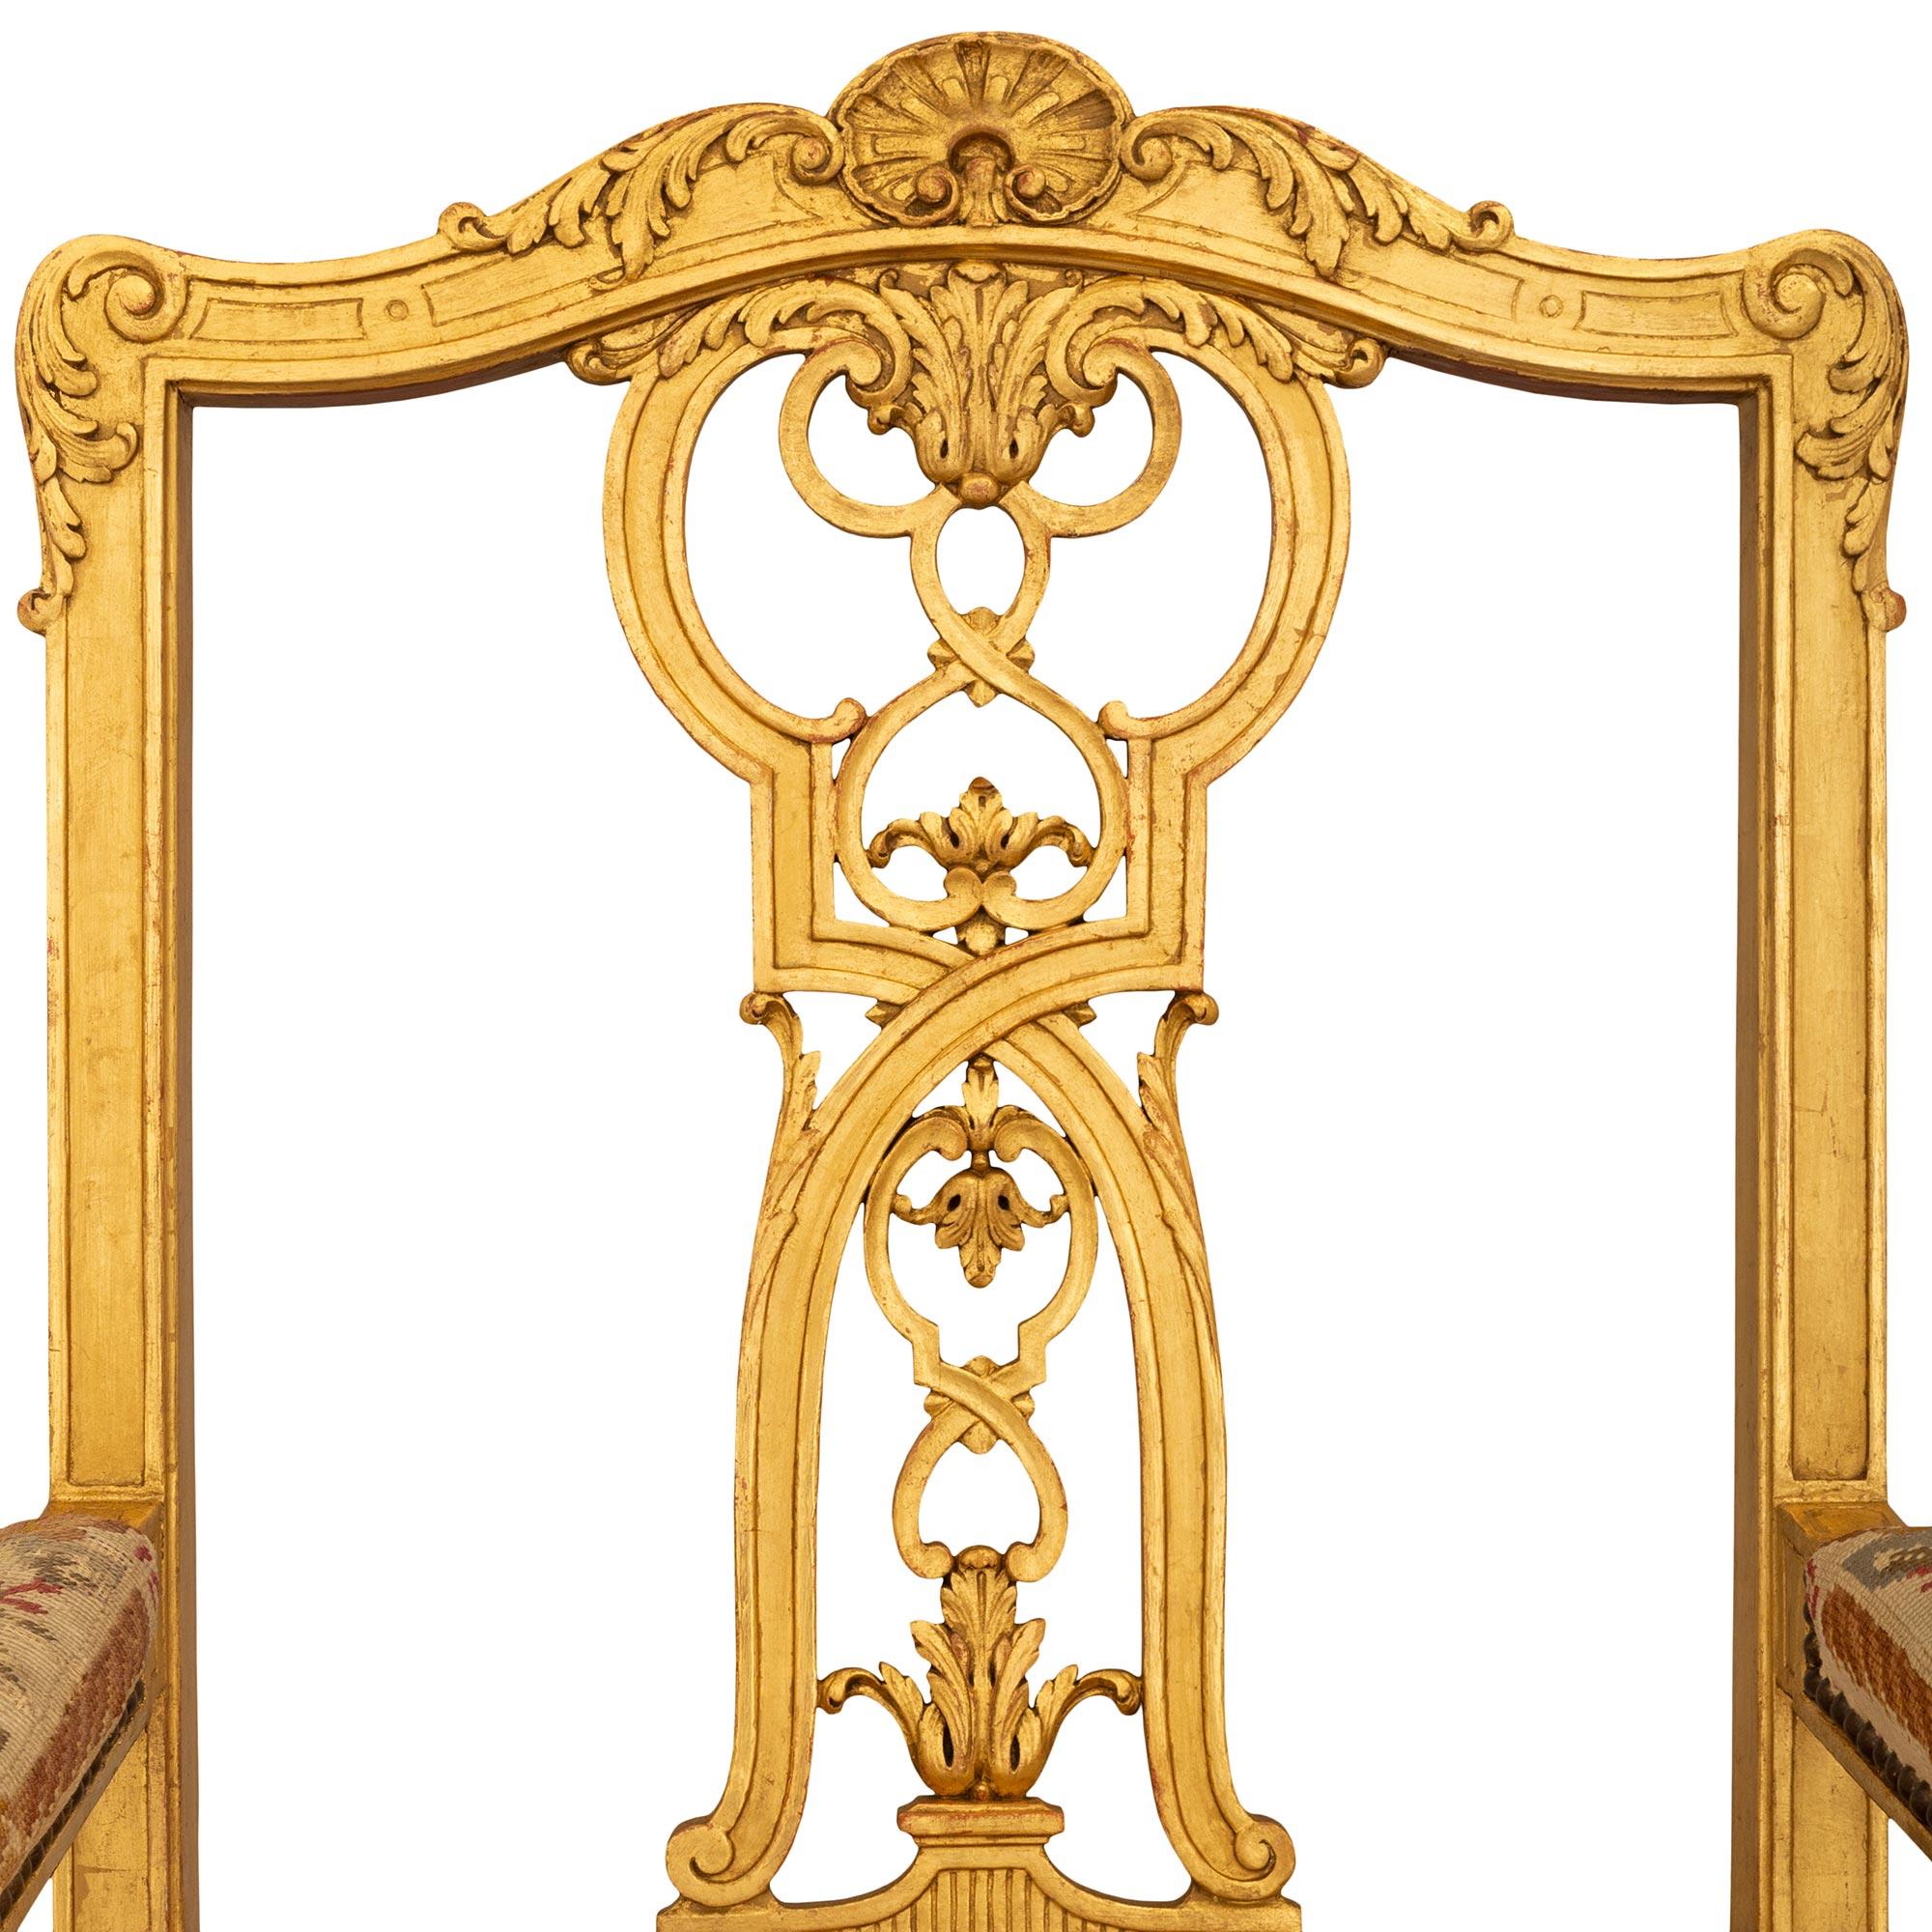 Paire de fauteuils Fauteuils en bois doré de style Louis XV du XIXe siècle, extrêmement décoratifs. Chaque fauteuil, merveilleusement détaillé, repose sur quatre pieds à volutes en 